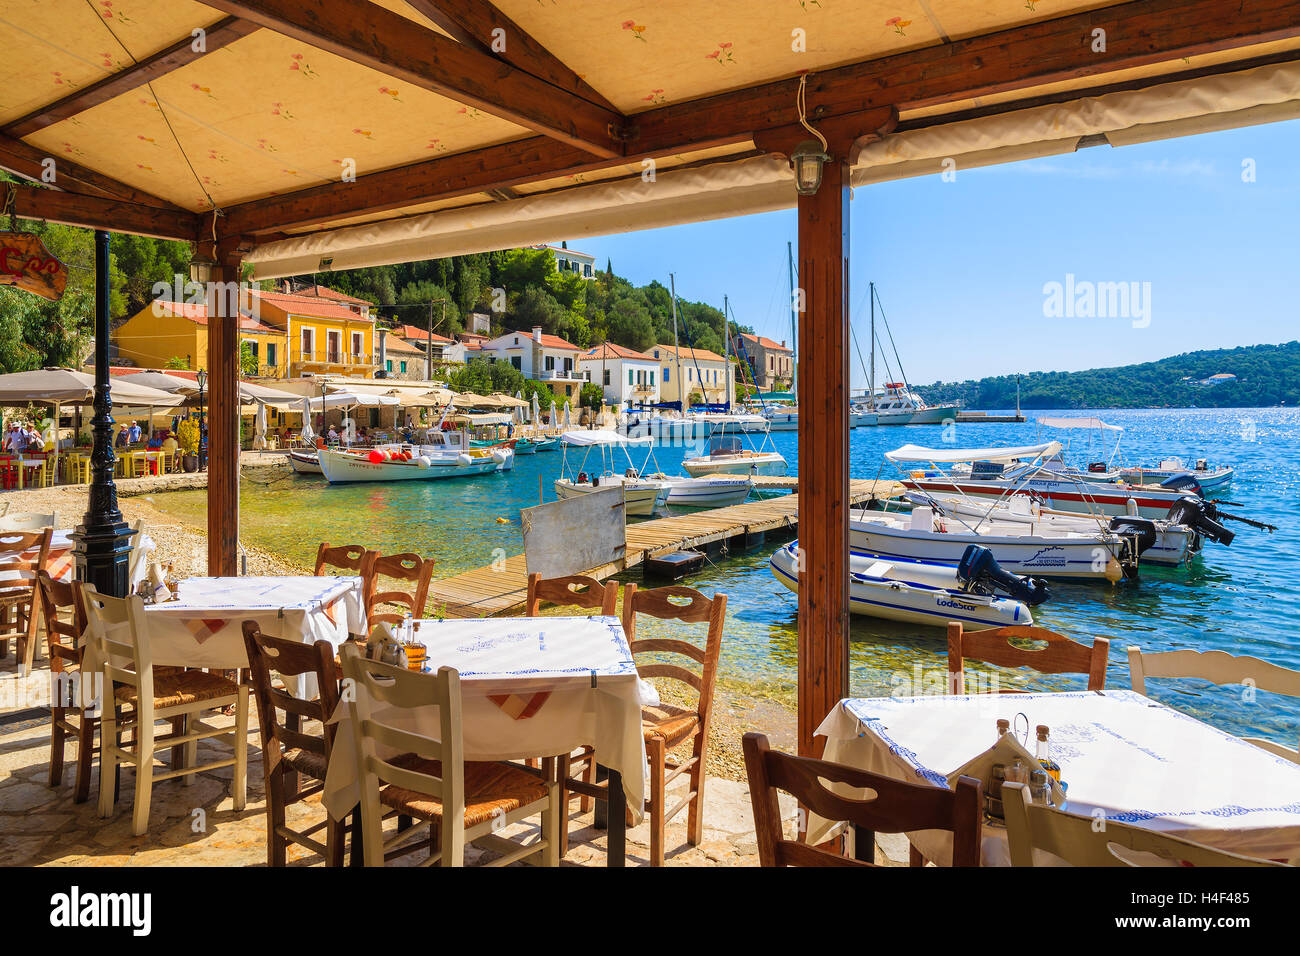 KIONI PORTA, Itaca isola - Sep 19, 2014: tabelle nel ristorante greco Kioni in porto. La Grecia è molto popolare meta di vacanza in Europa. Foto Stock